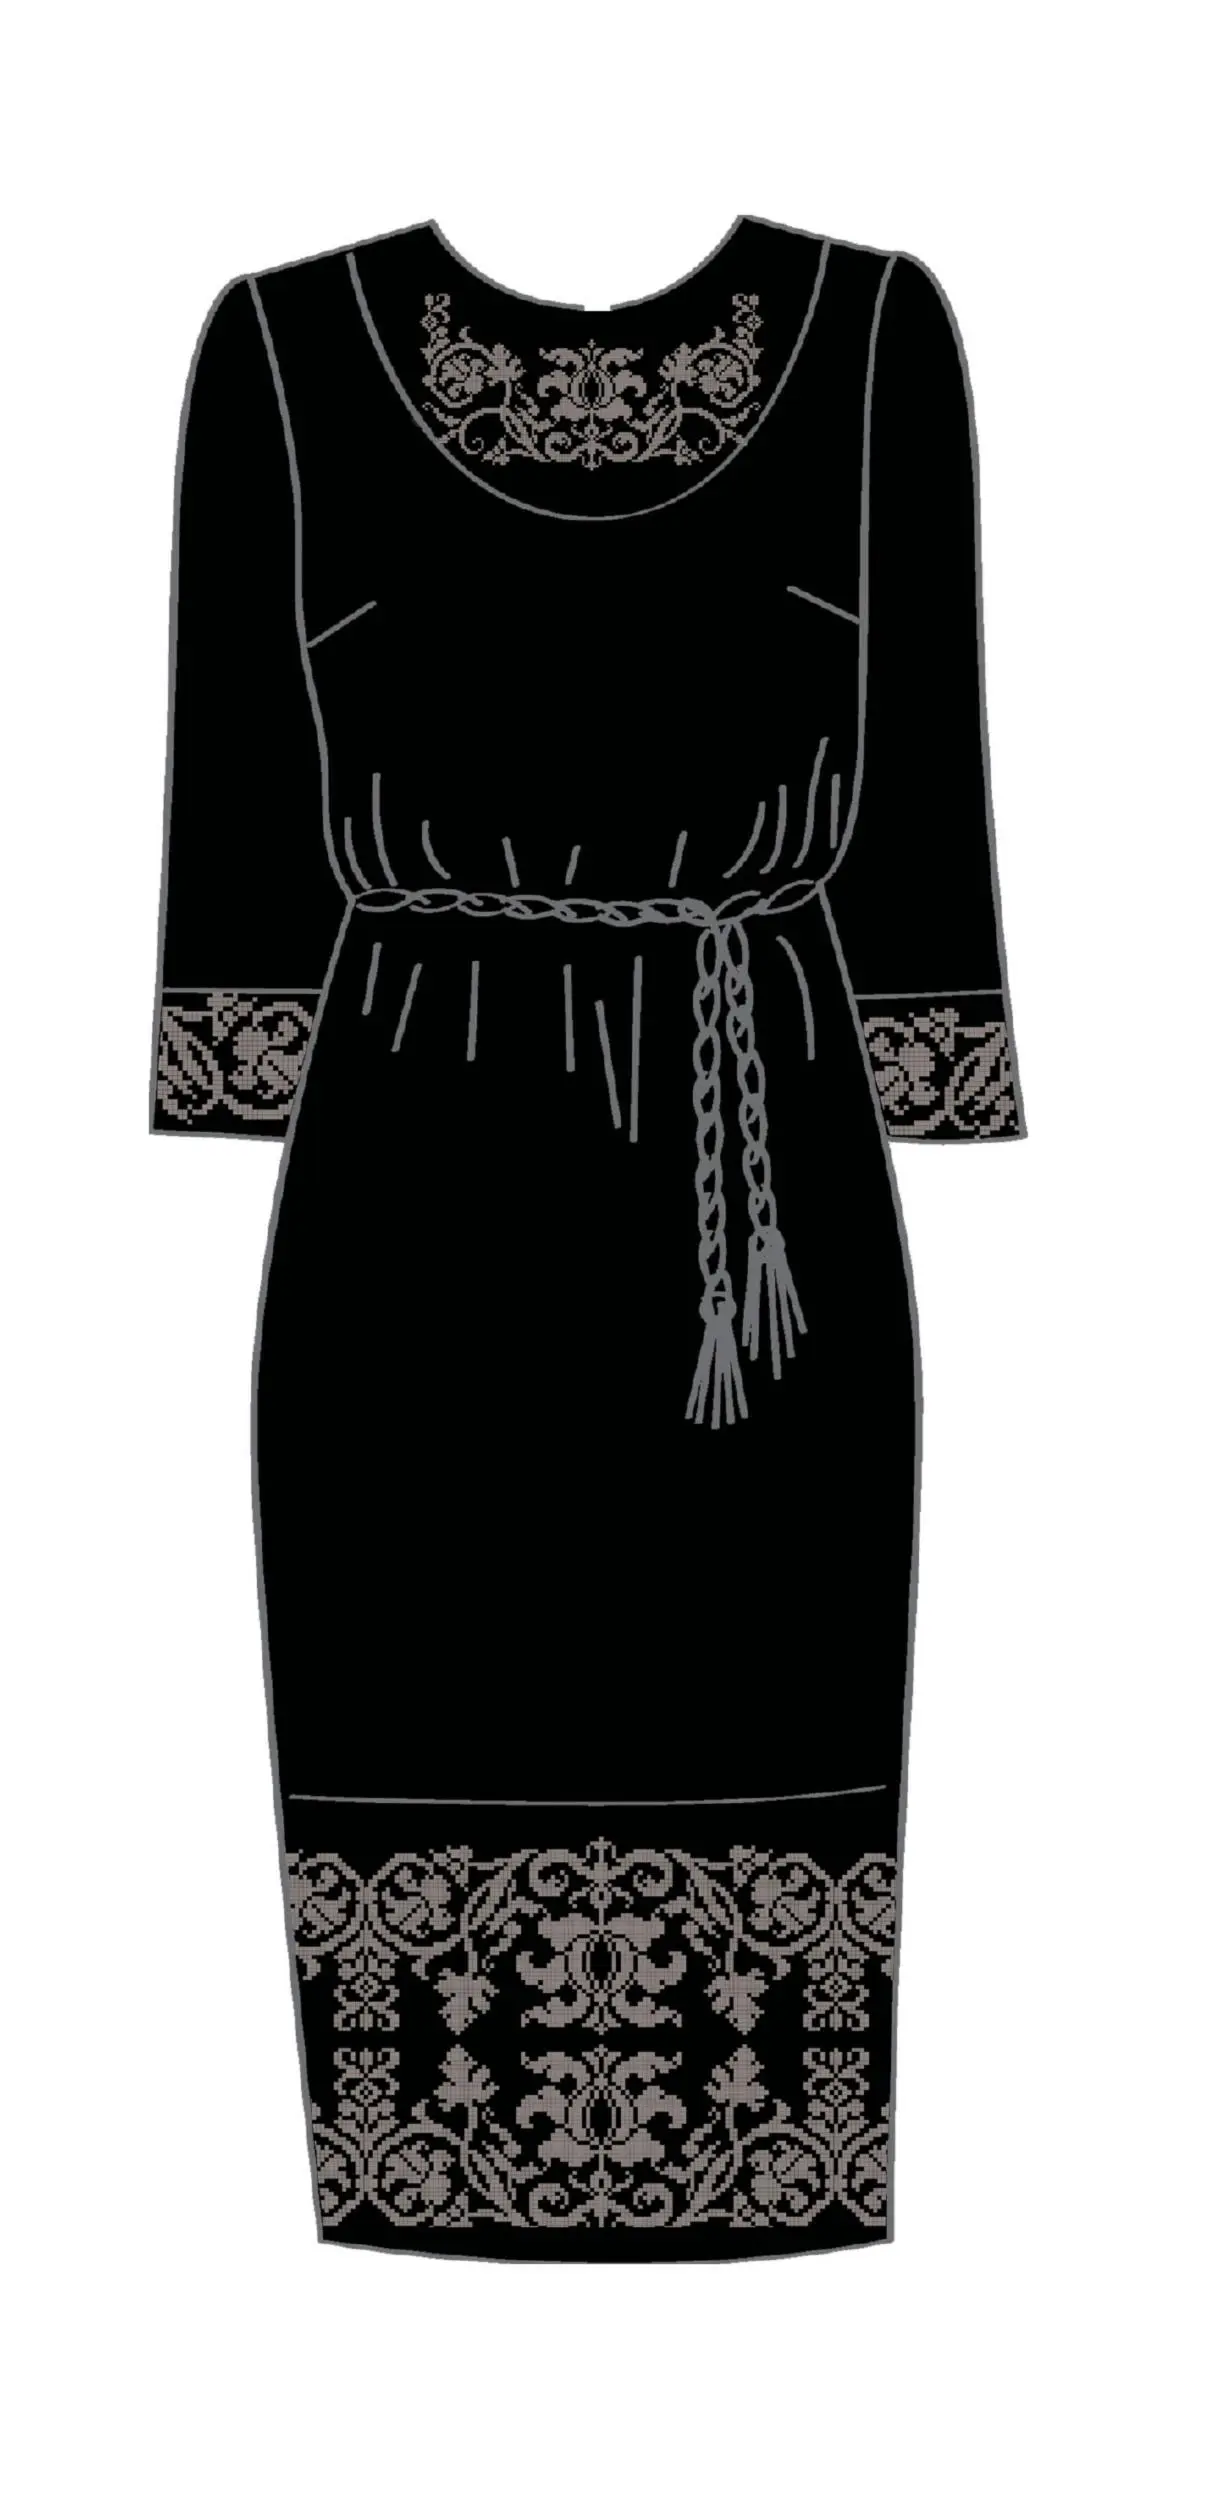 820-14/10 Плаття жіноче з поясом, чорне, розмір 50